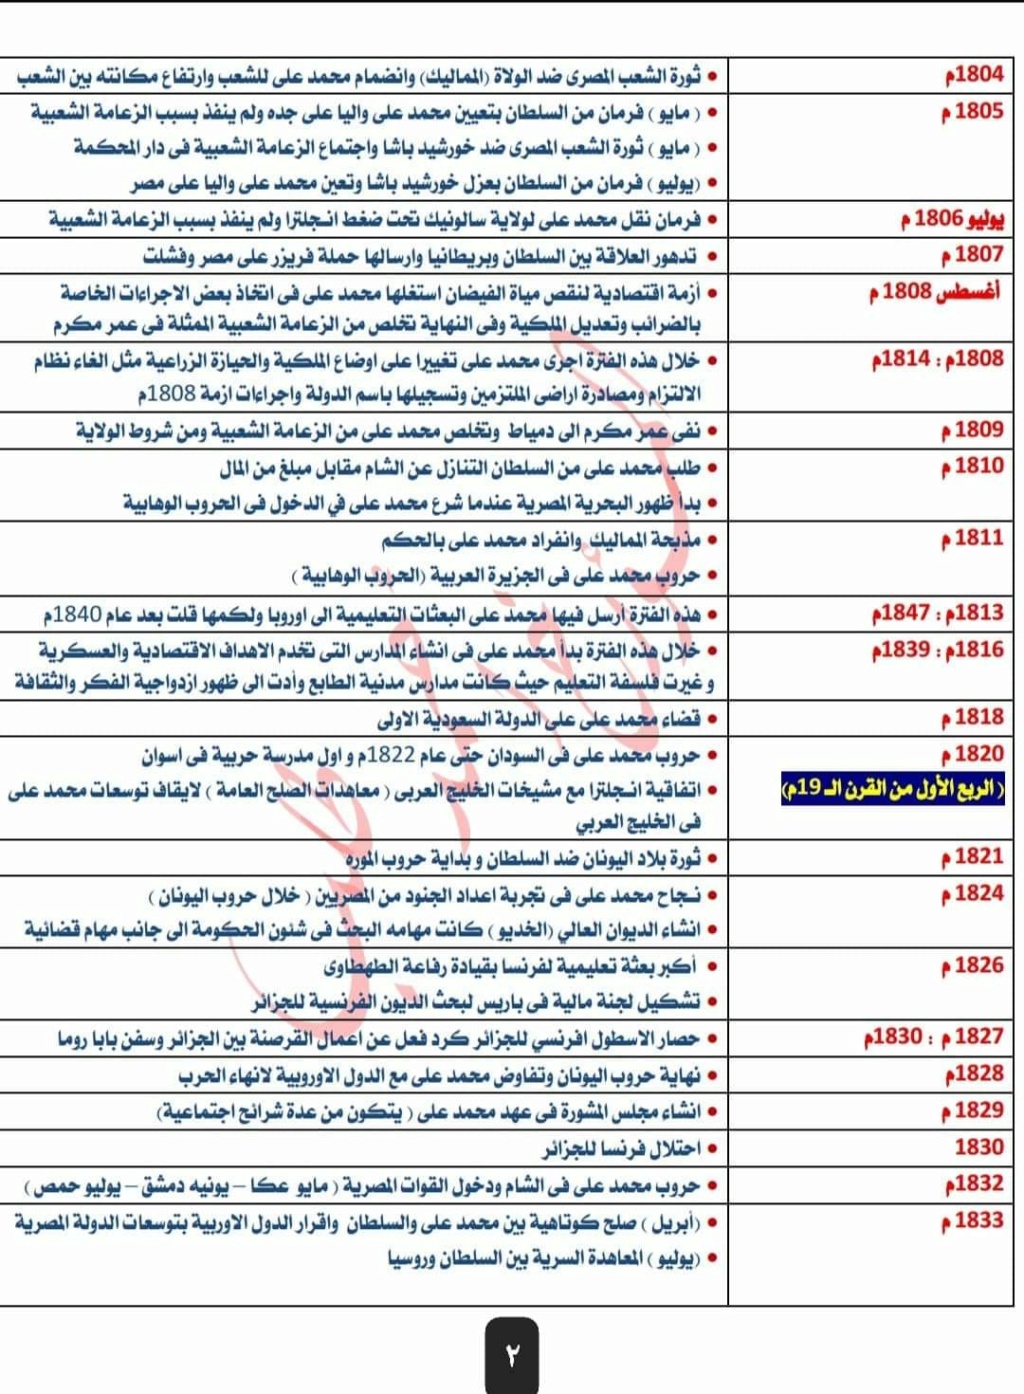 تواريخ منهج ثالثة ثانوي بالترتيب الزمني و قائمة حكام مصر بالترتيب  264